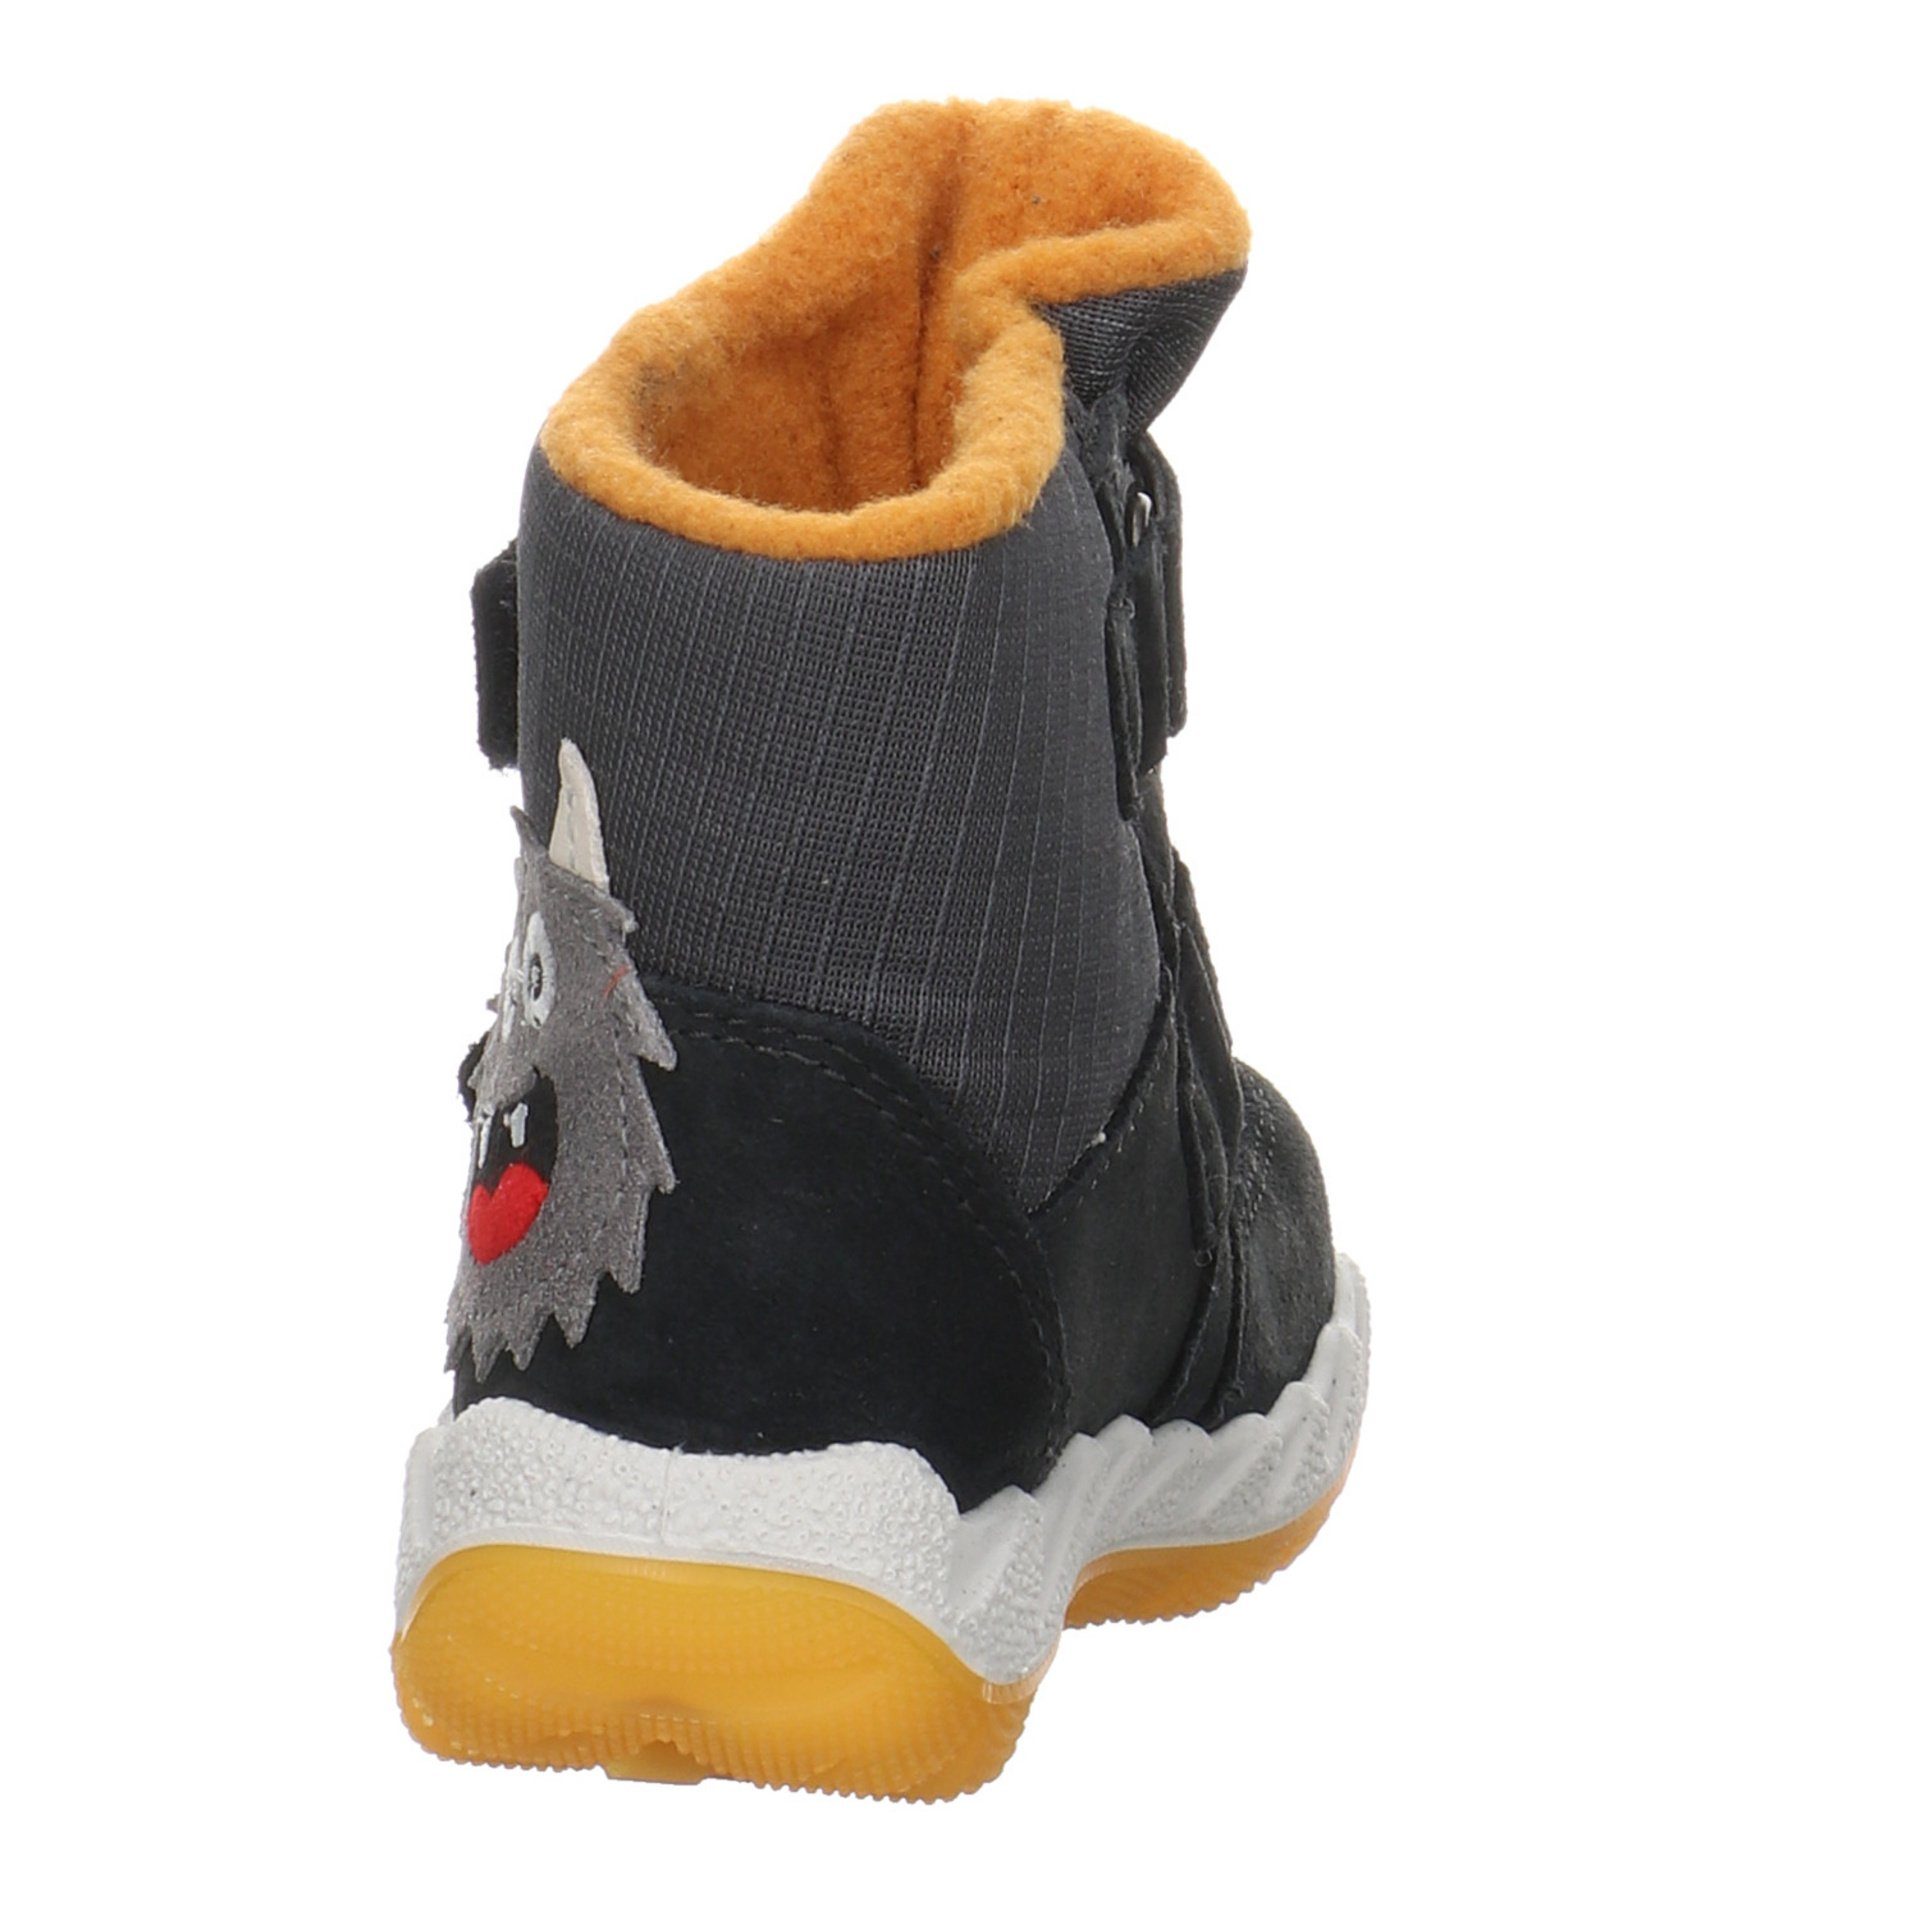 Lauflernschuhe Baby Icebird Lauflernschuh Boots Krabbelschuhe Leder-/Textilkombination gelb grau Superfit